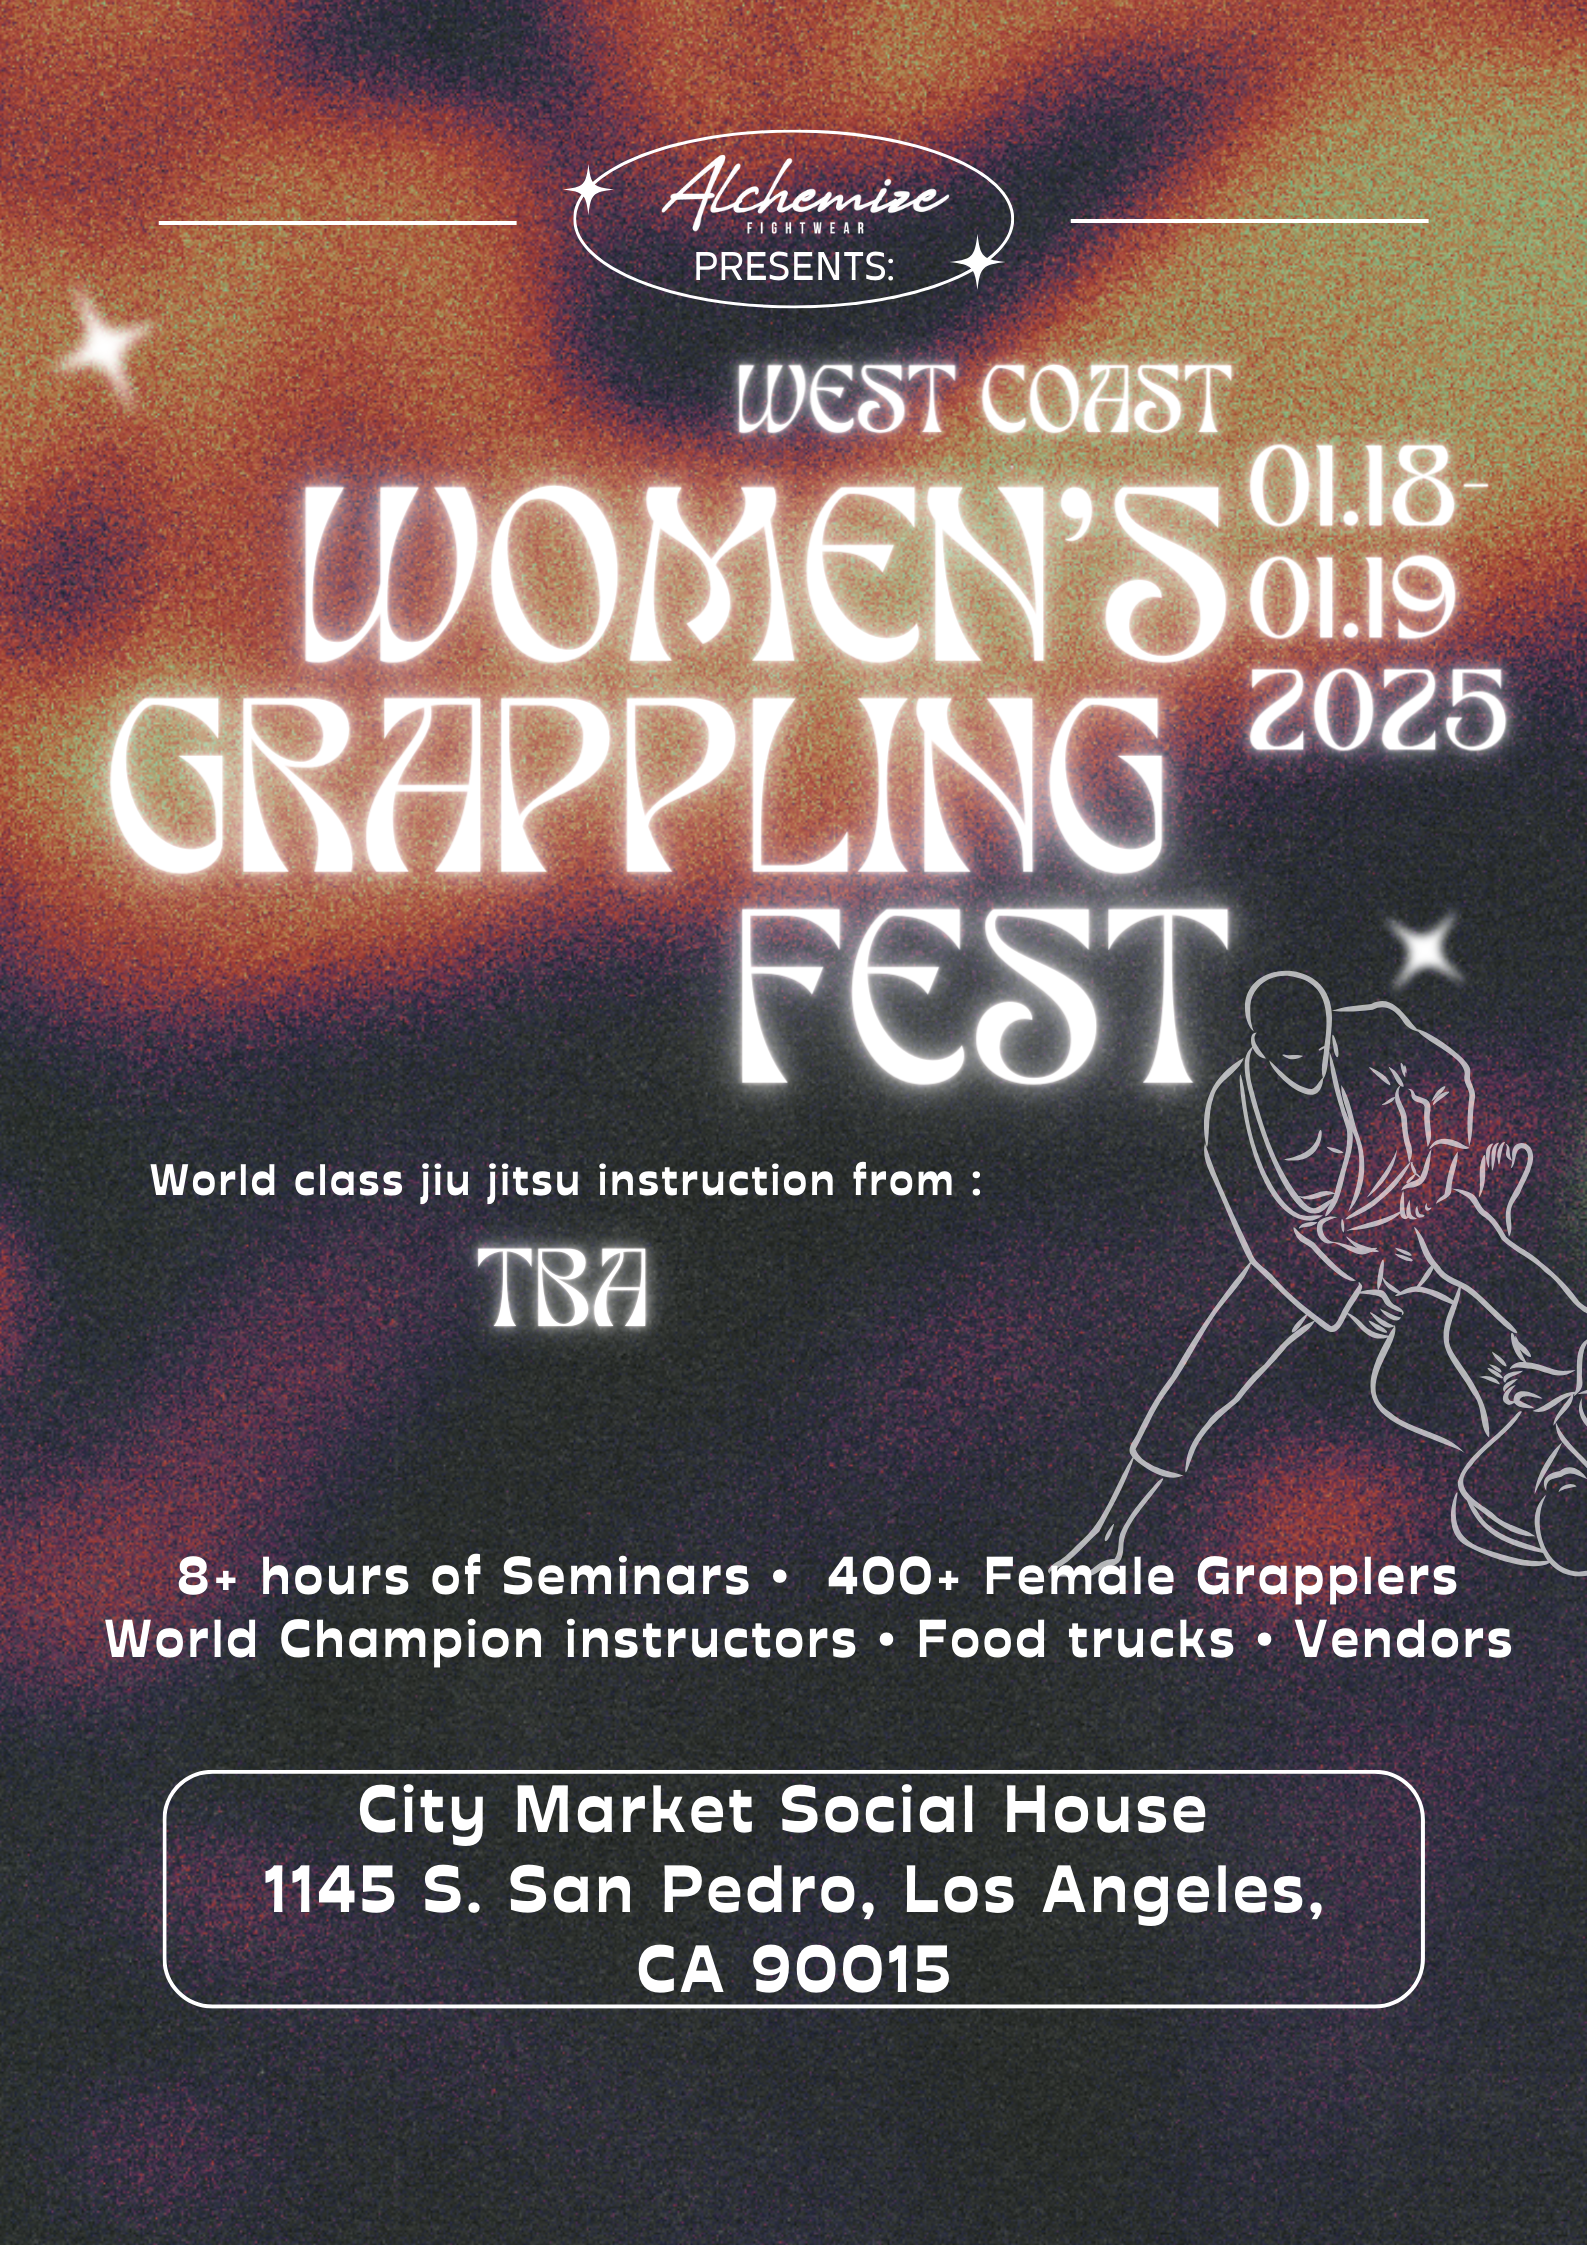 Alchemize West Coast Women's Grappling Fest - Jan 18th & 19th, 2025